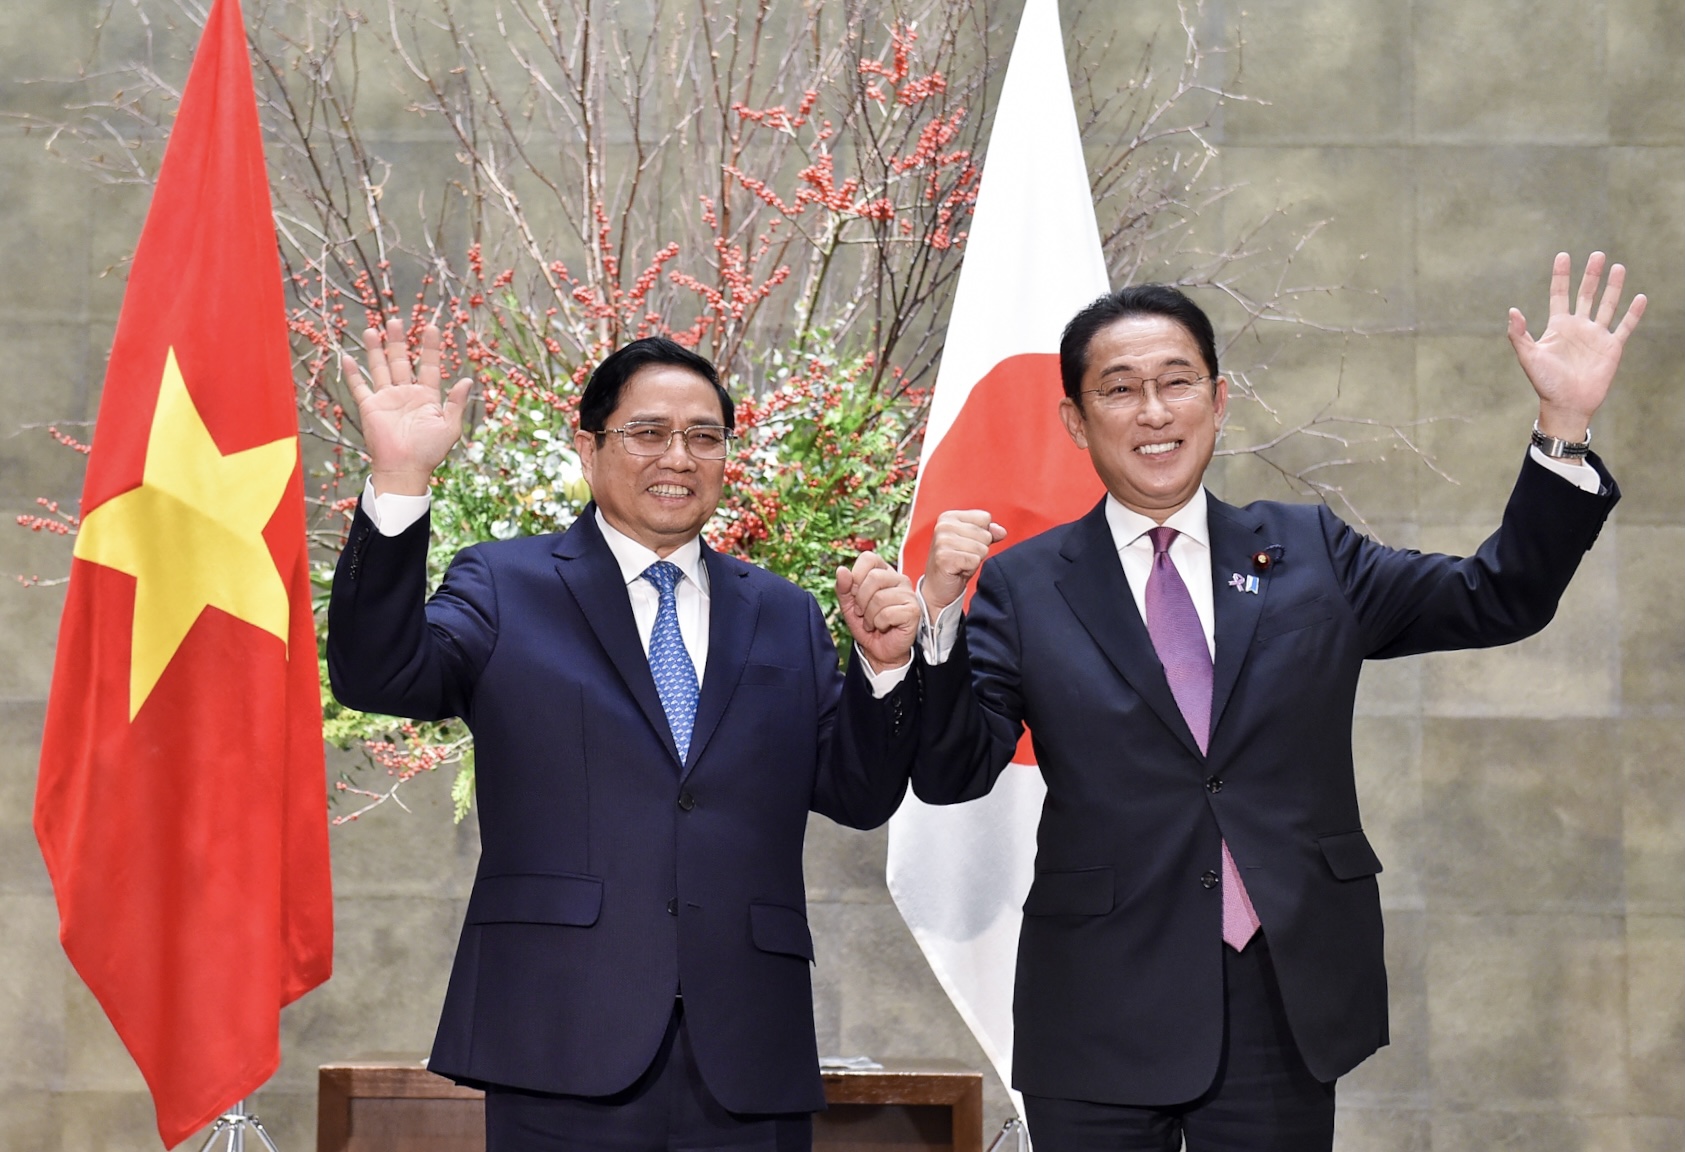 Chùm ảnh: Lễ đón trọng thể Thủ tướng Phạm Minh Chính thăm chính thức Nhật Bản